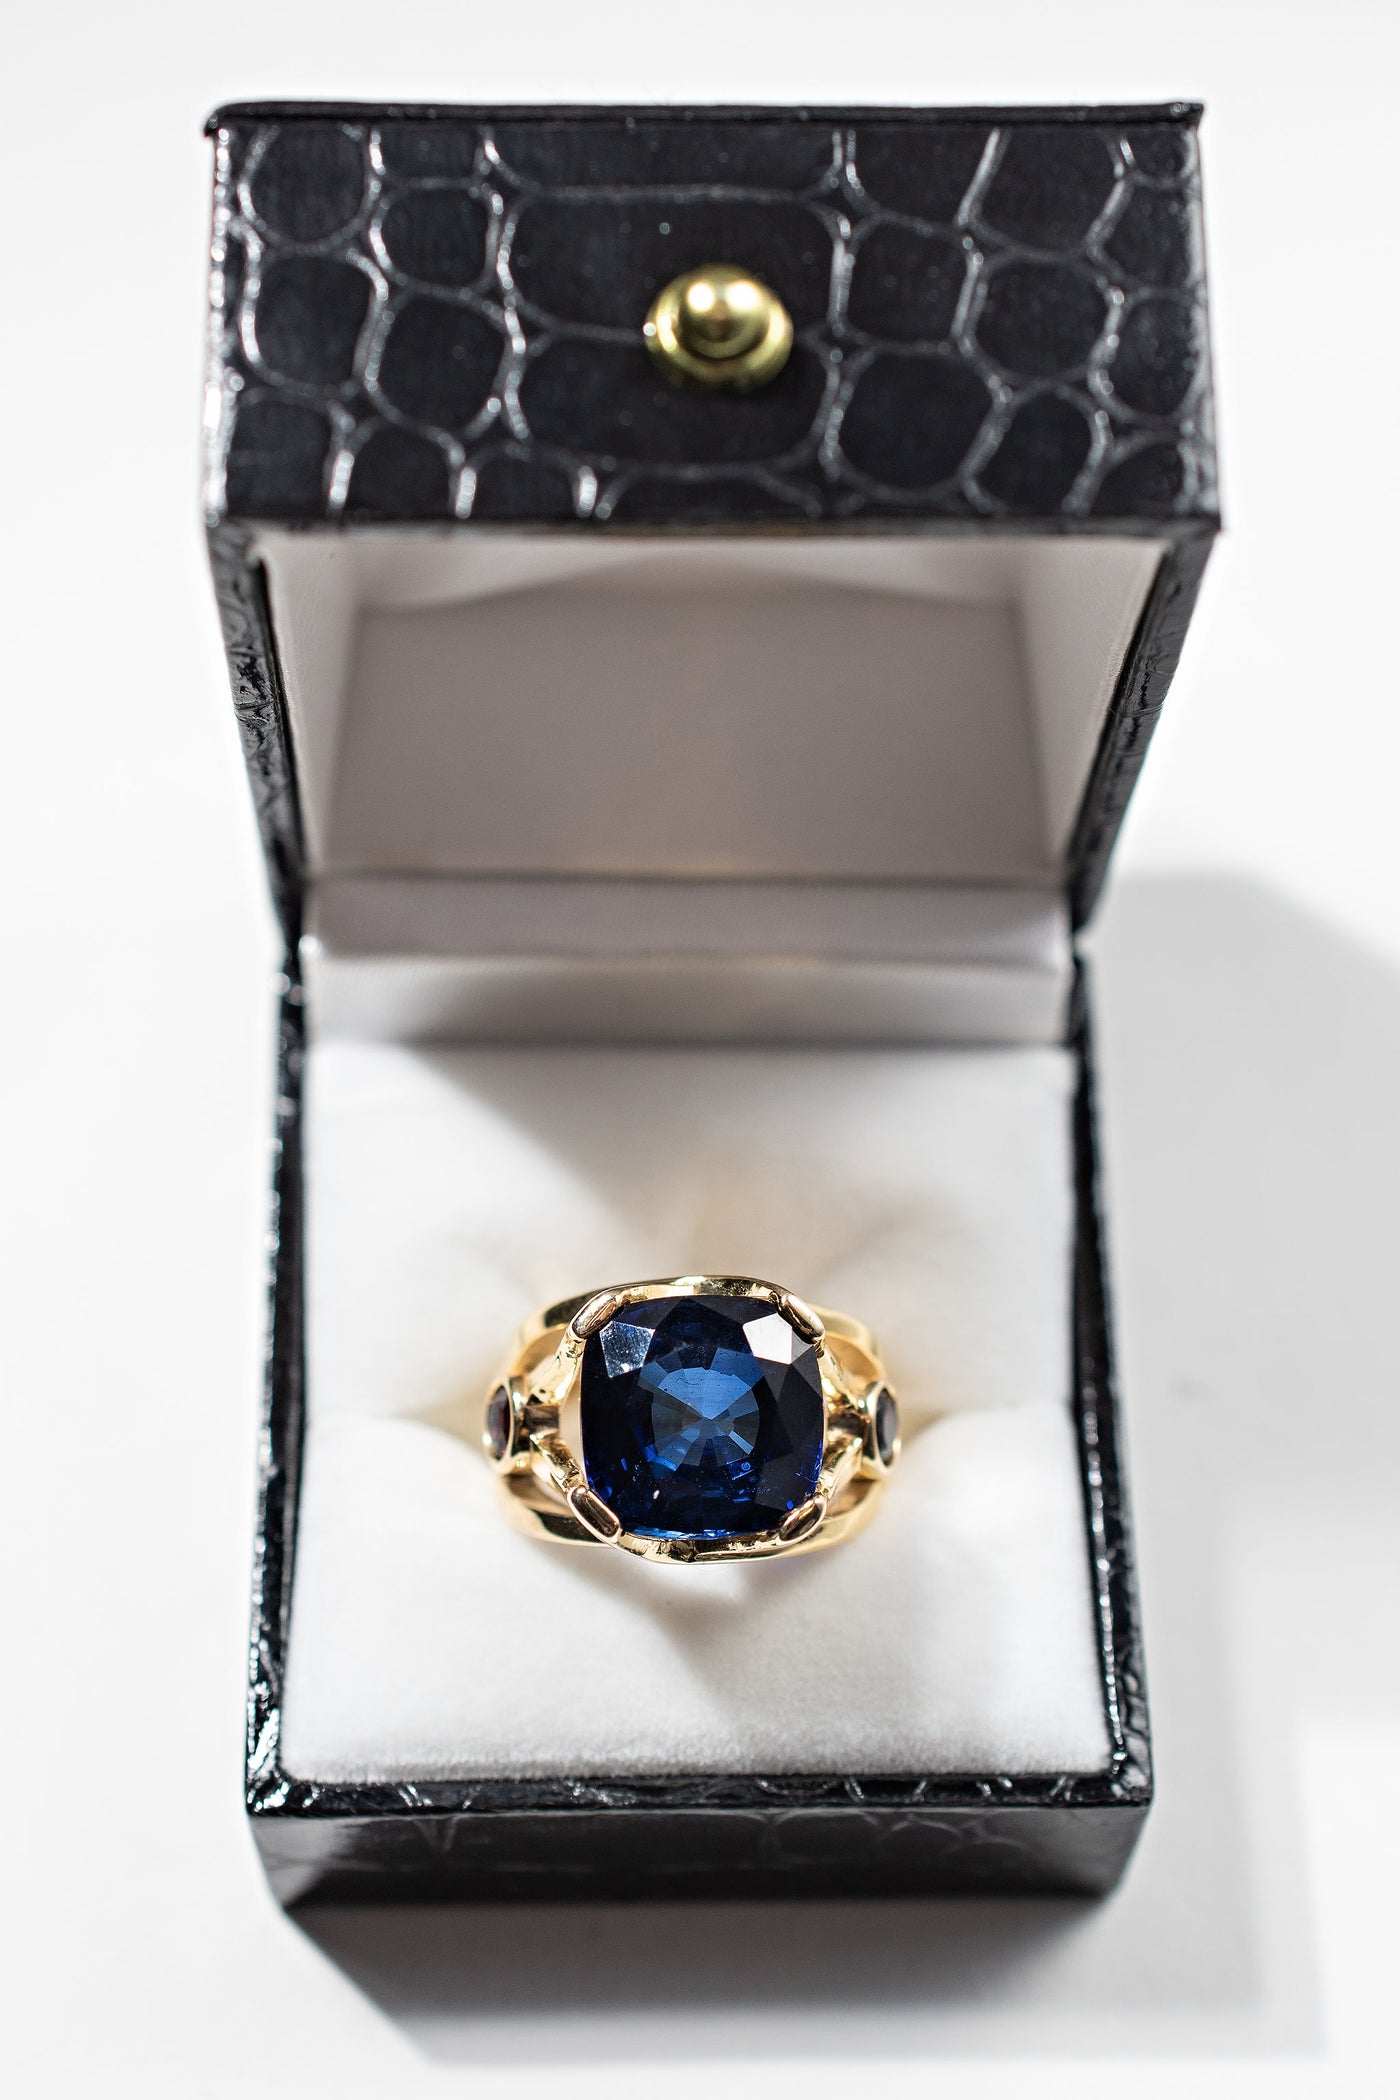 10ct Cornflower Sapphire Ring - 14k Yellow Gold